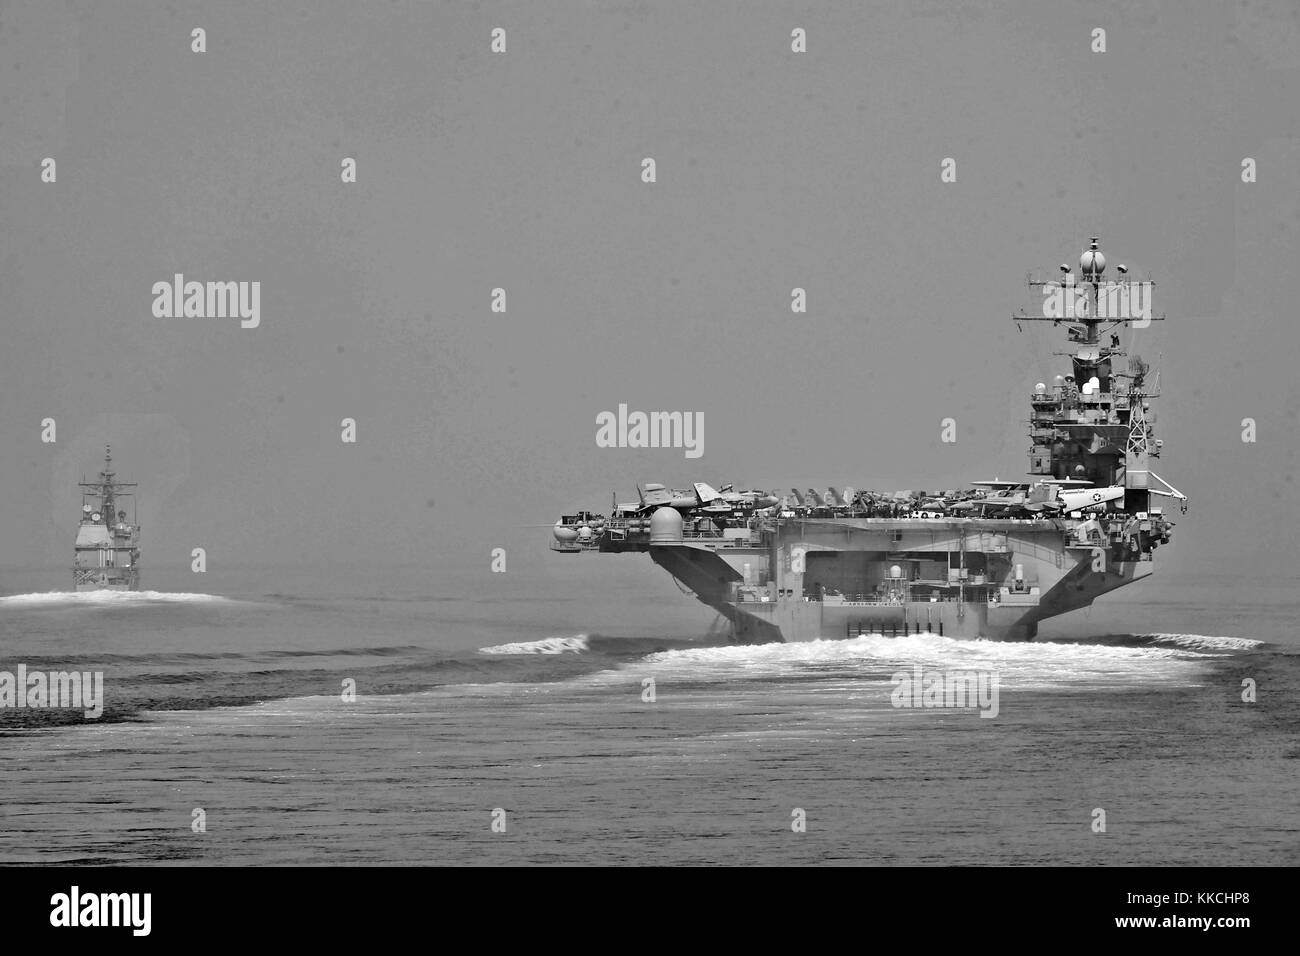 Il guidato-missili cruiser USS Capo St George CG 71 e la portaerei USS Abraham Lincoln CVN 72 il transito dello Stretto di Hormuz, Stretto di Hormuz. Immagine cortesia U.S. Foto di Marina di Massa lo specialista di comunicazione di terza classe Alex R. Forster/US Navy. 2012. Foto Stock